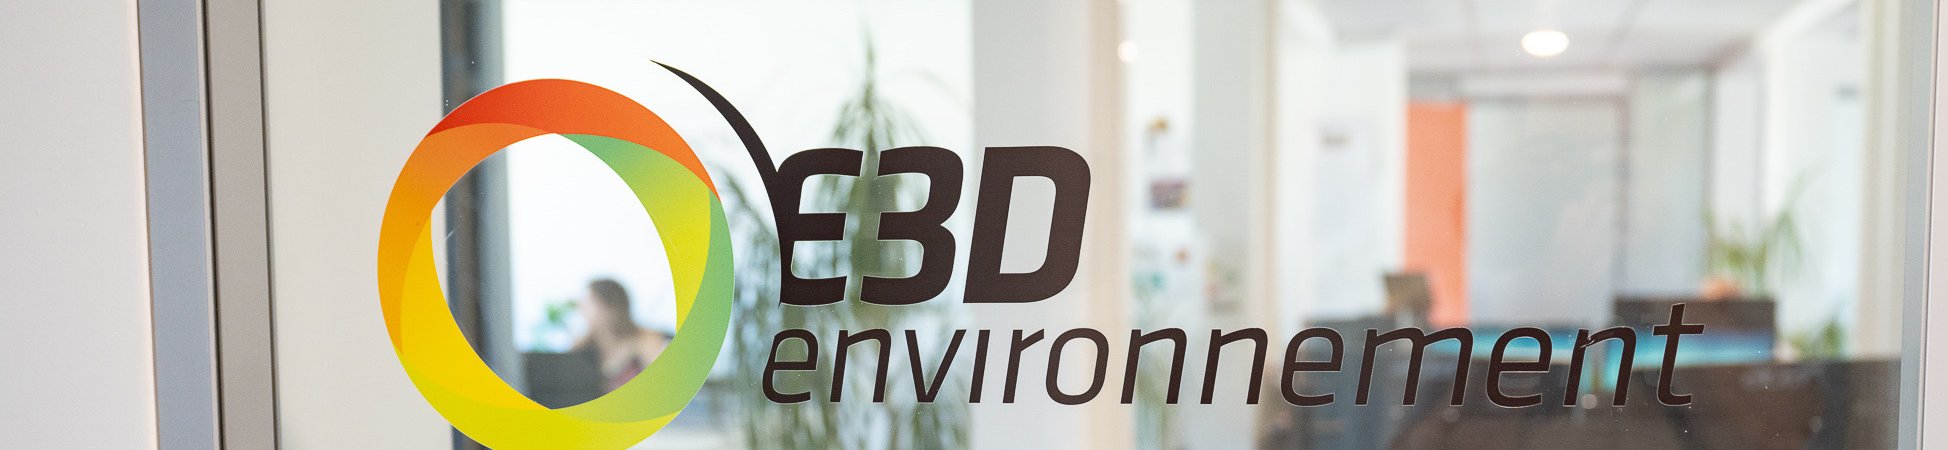 E3D-Environnement